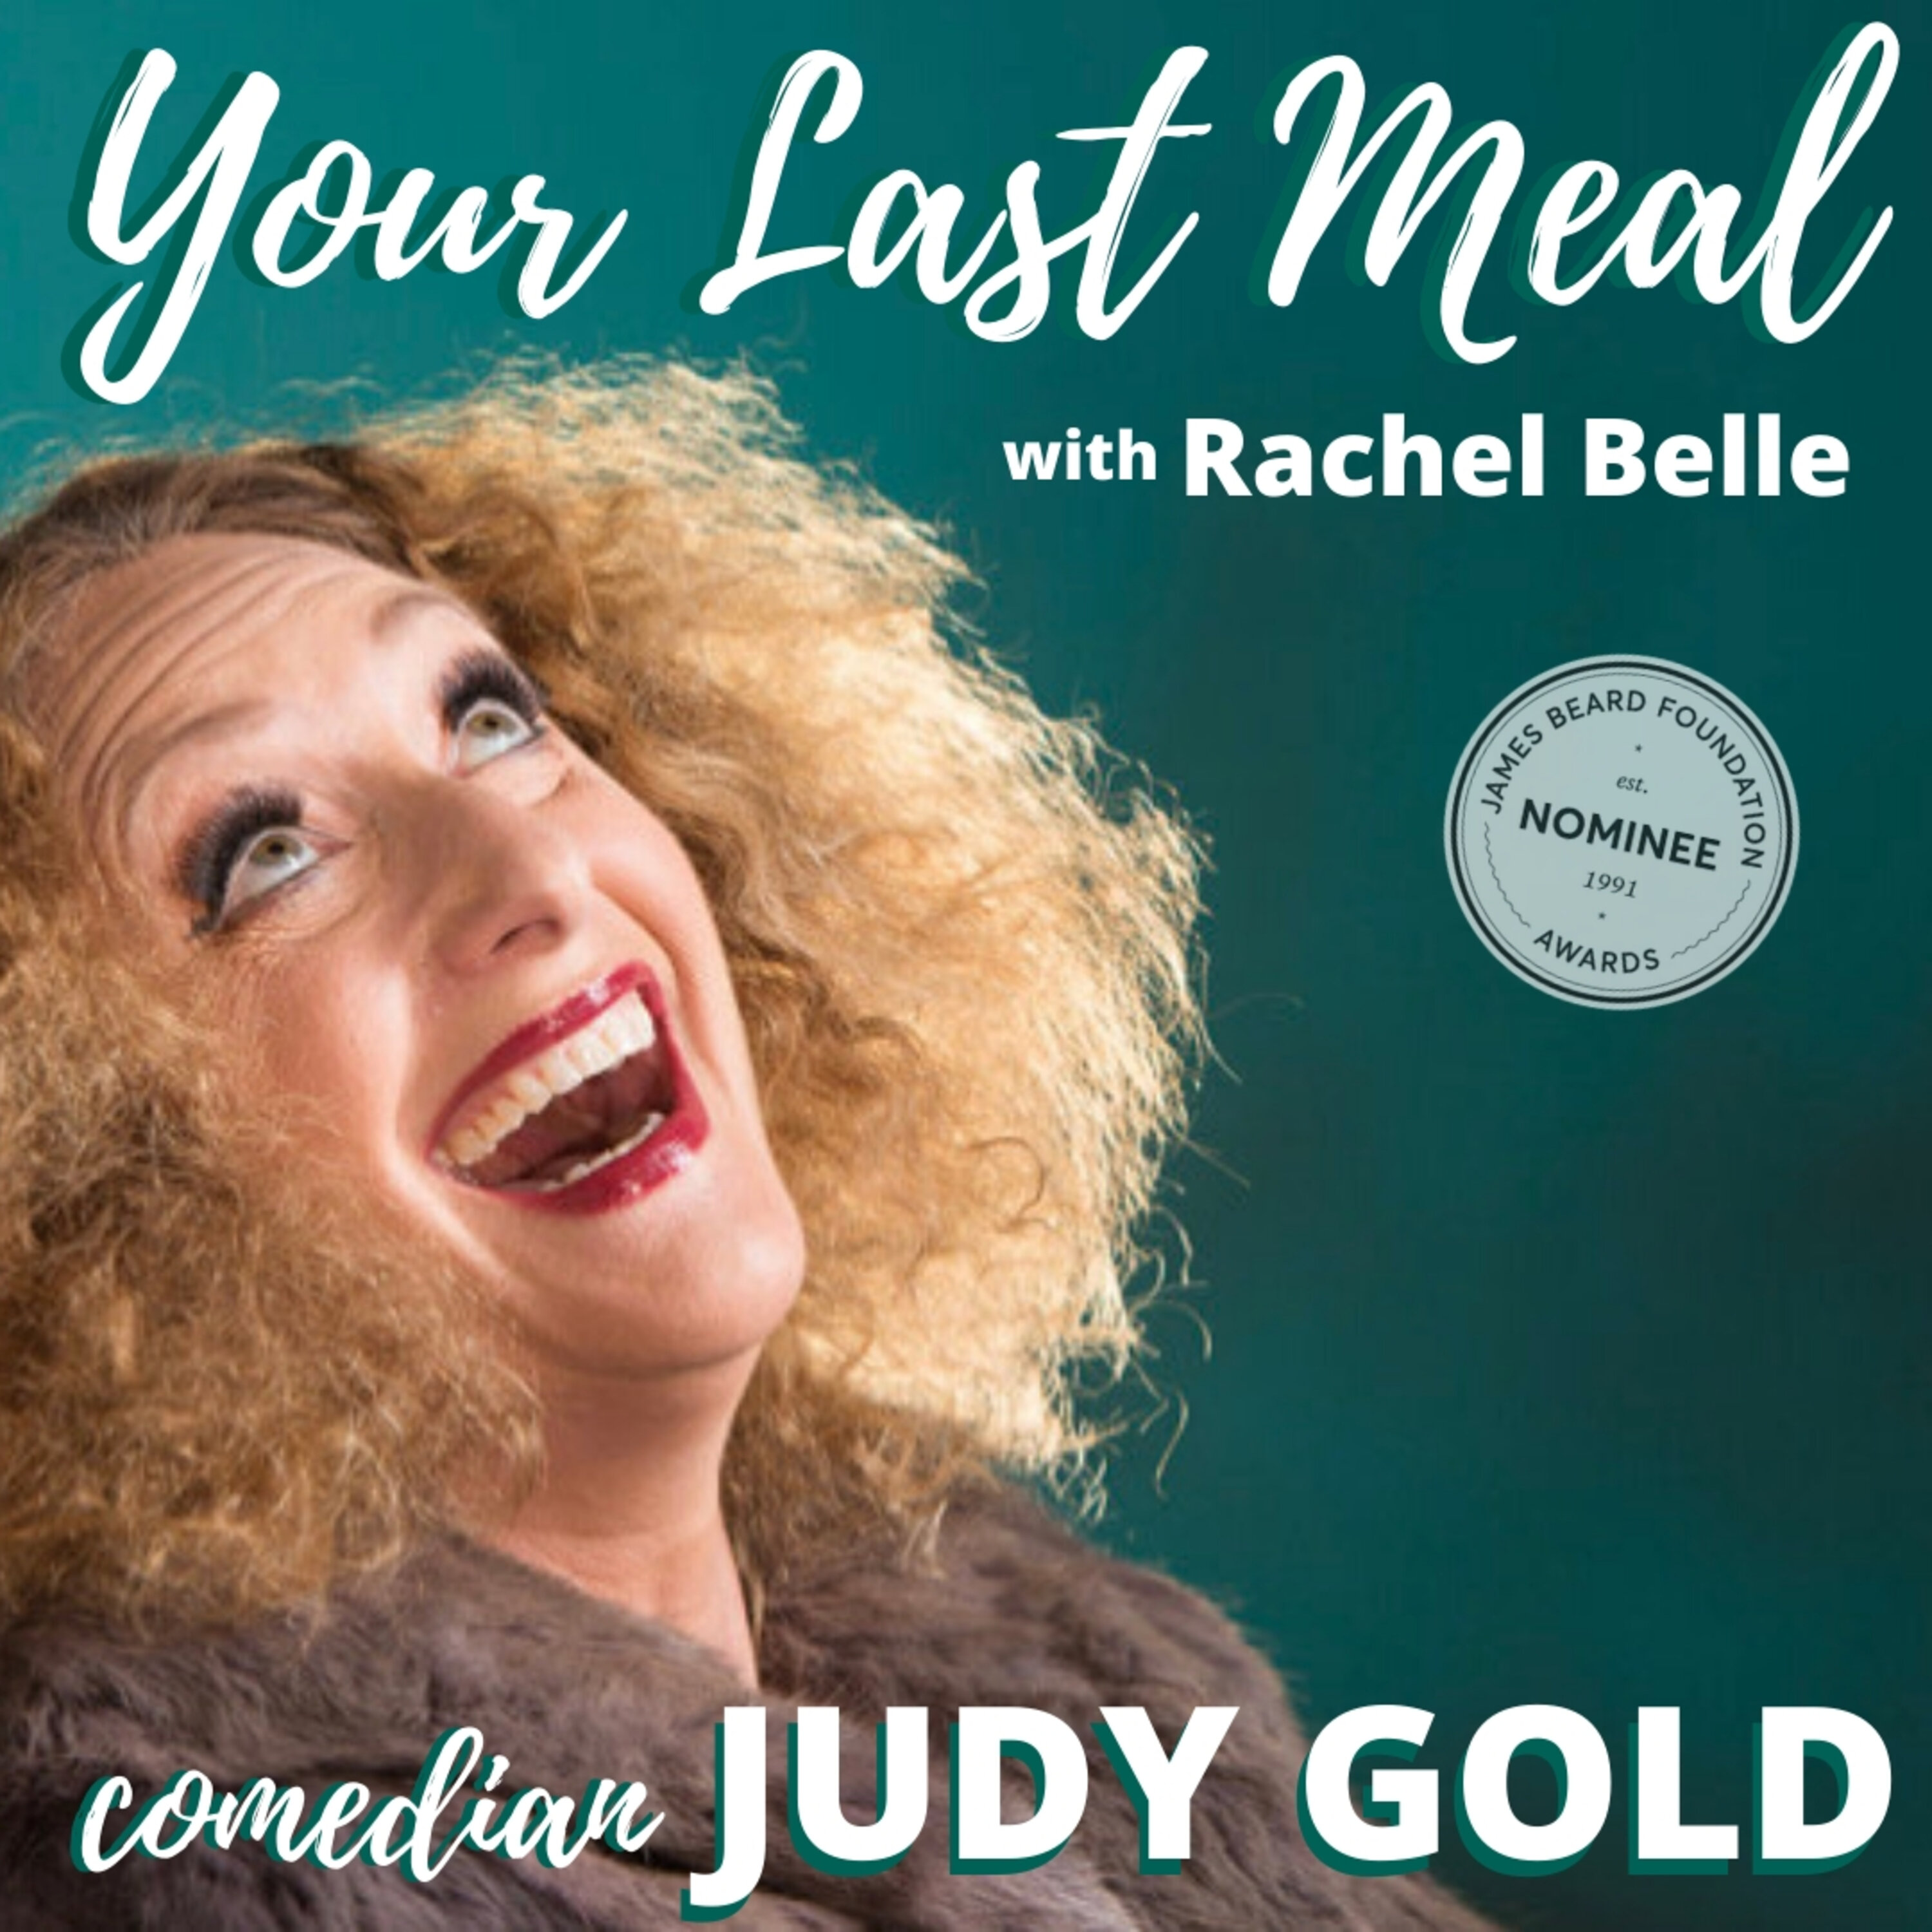 Judy Gold: Challah, stuffed cabbage, chocolate pudding